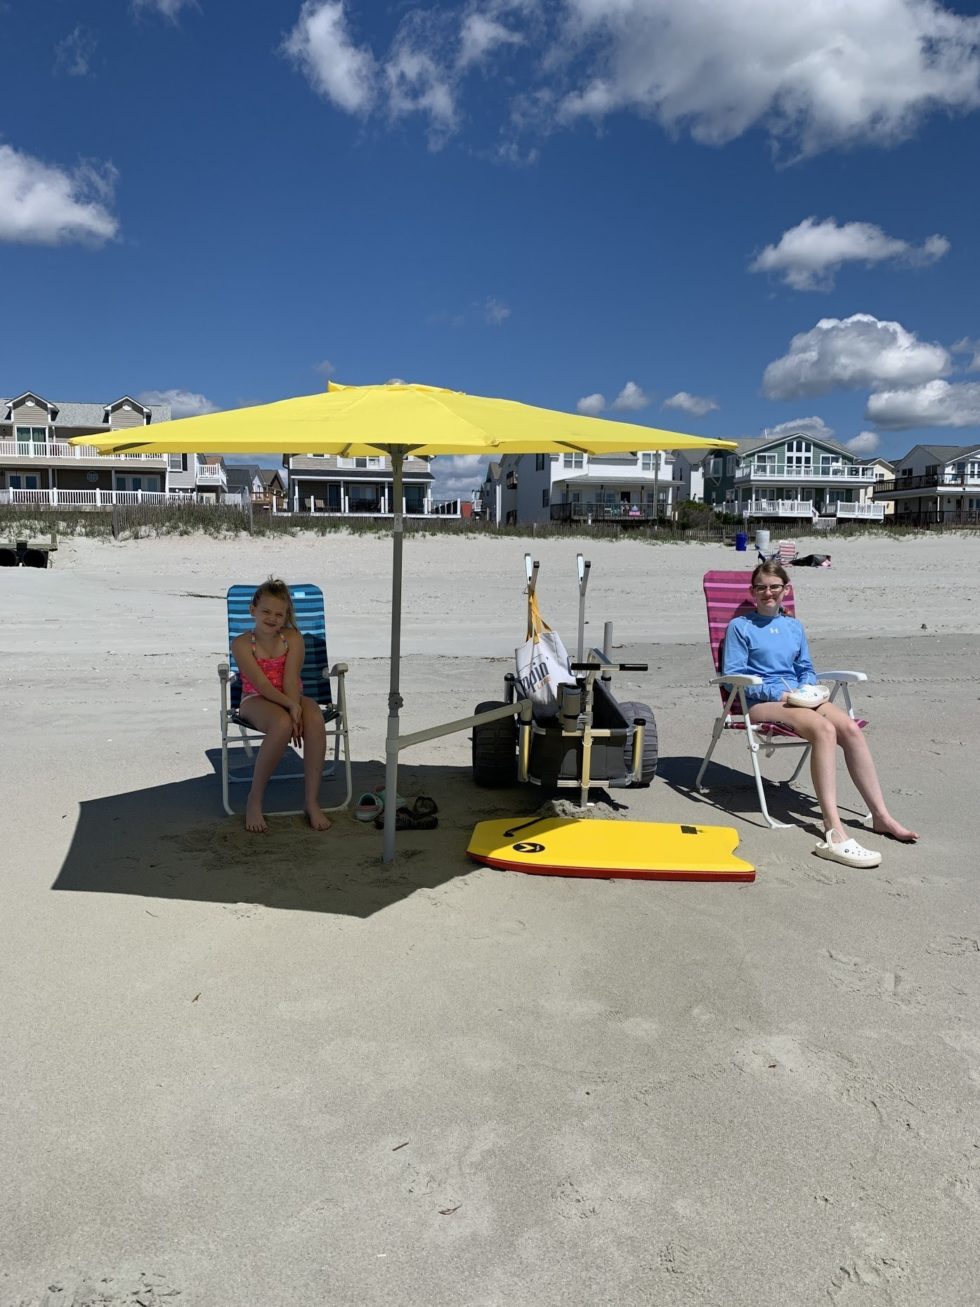 Connect umbrella to beach chair